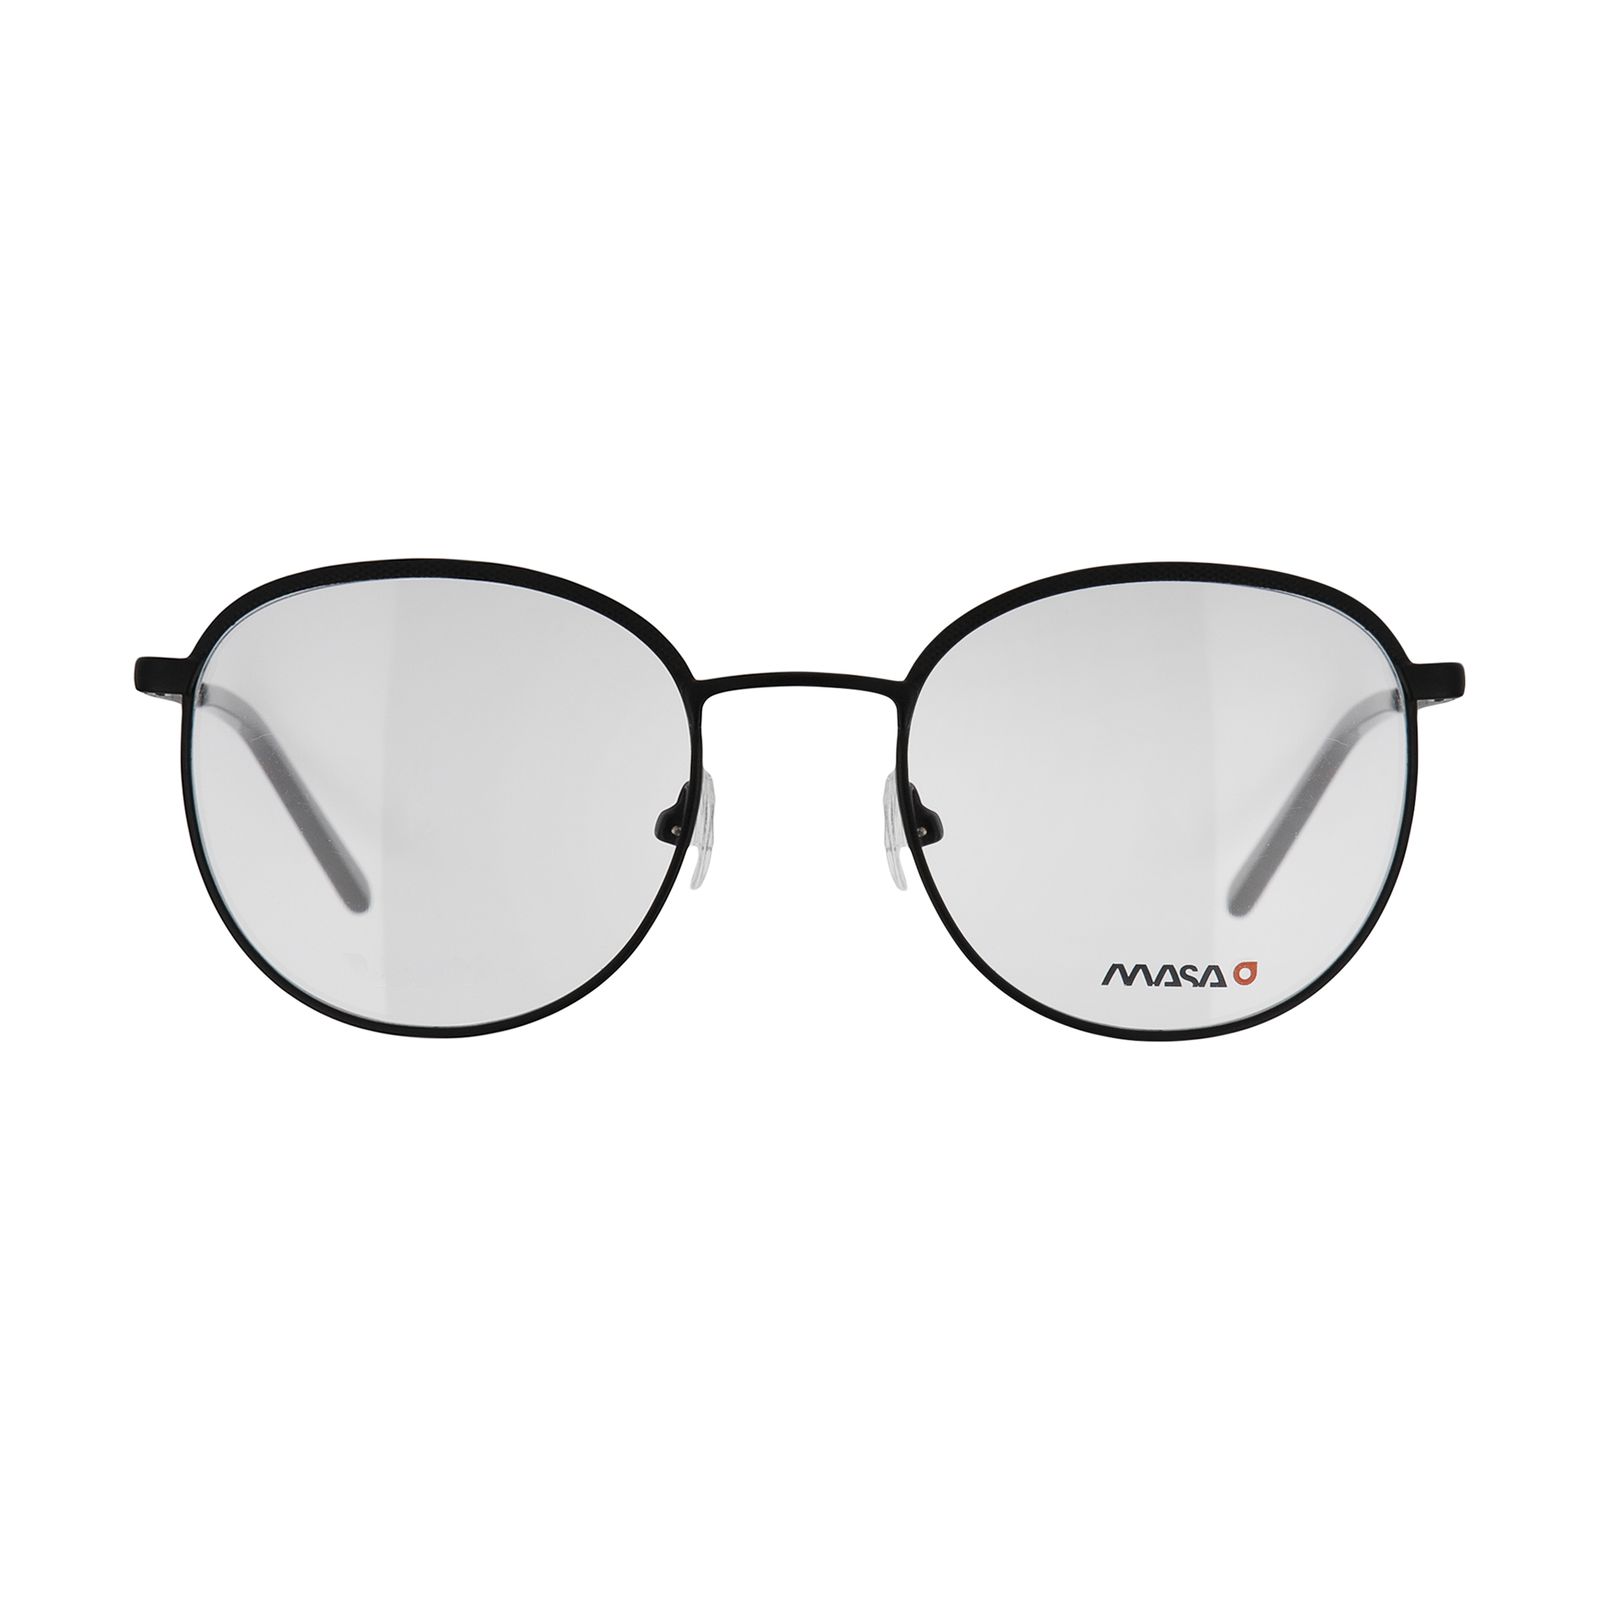 فریم عینک طبی ماسائو مدل 13191-115 -  - 1